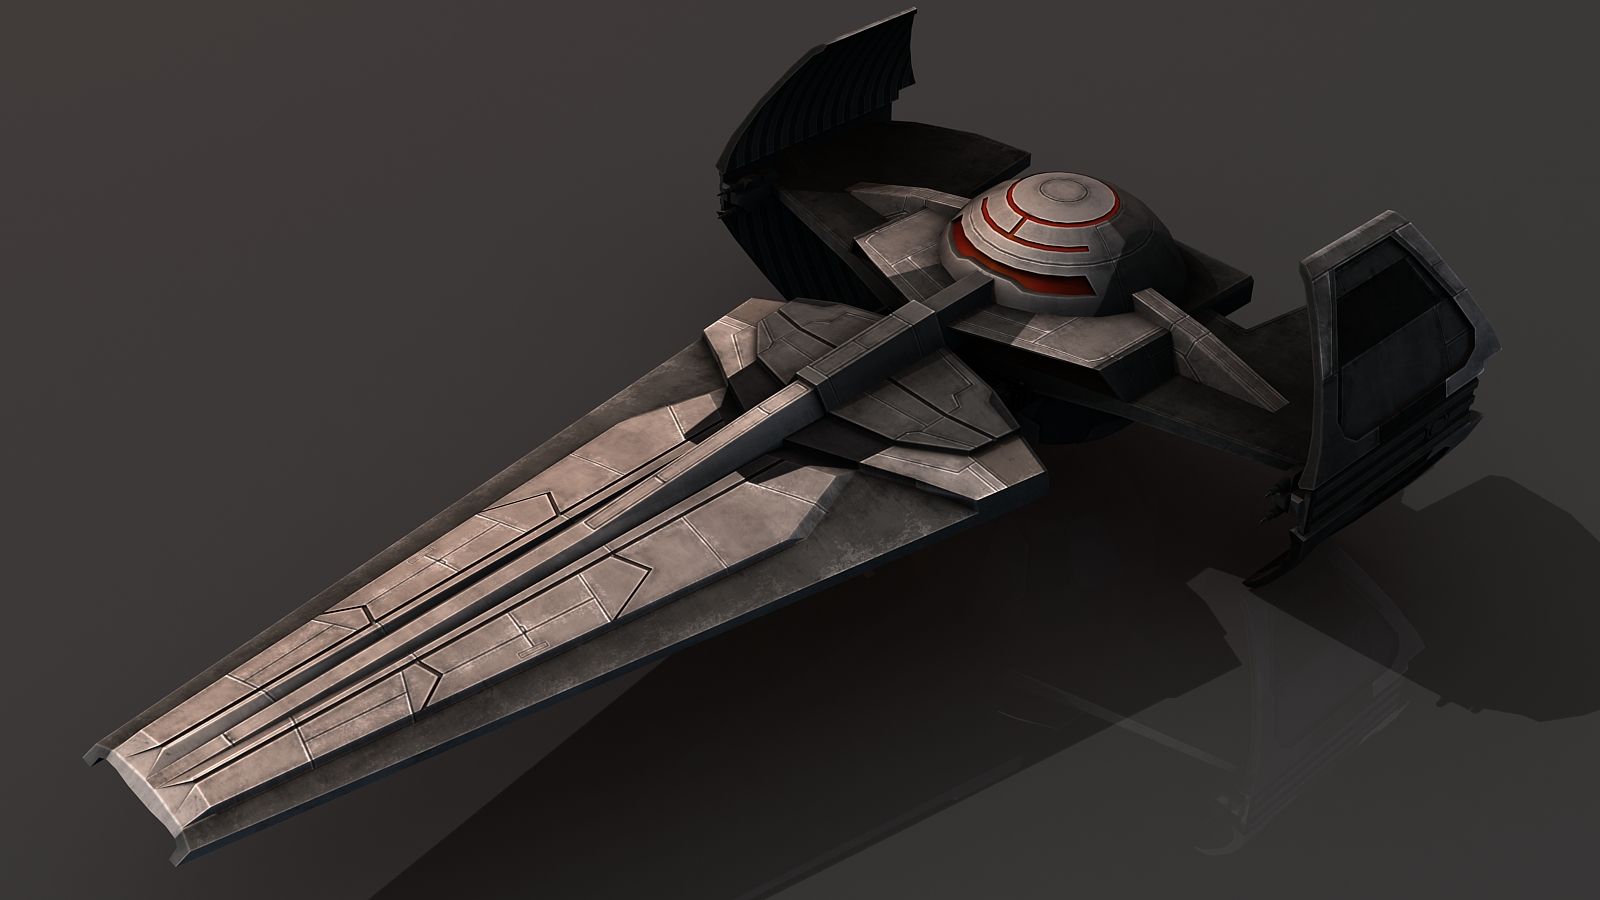 Sith Infiltrator: Textured image: Tides of War Mod for Freelancer. Star wars ships, Star wars rpg, Star wars universe